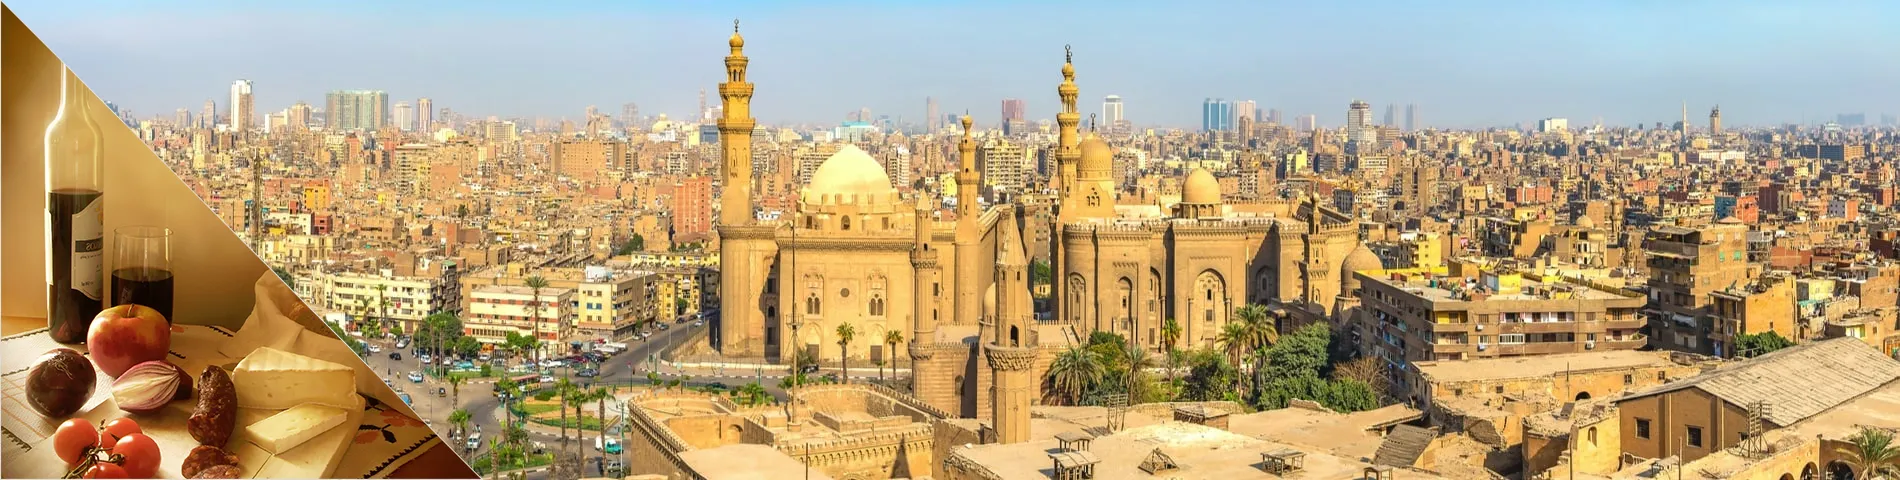 El Cairo - Árabe + Cultura